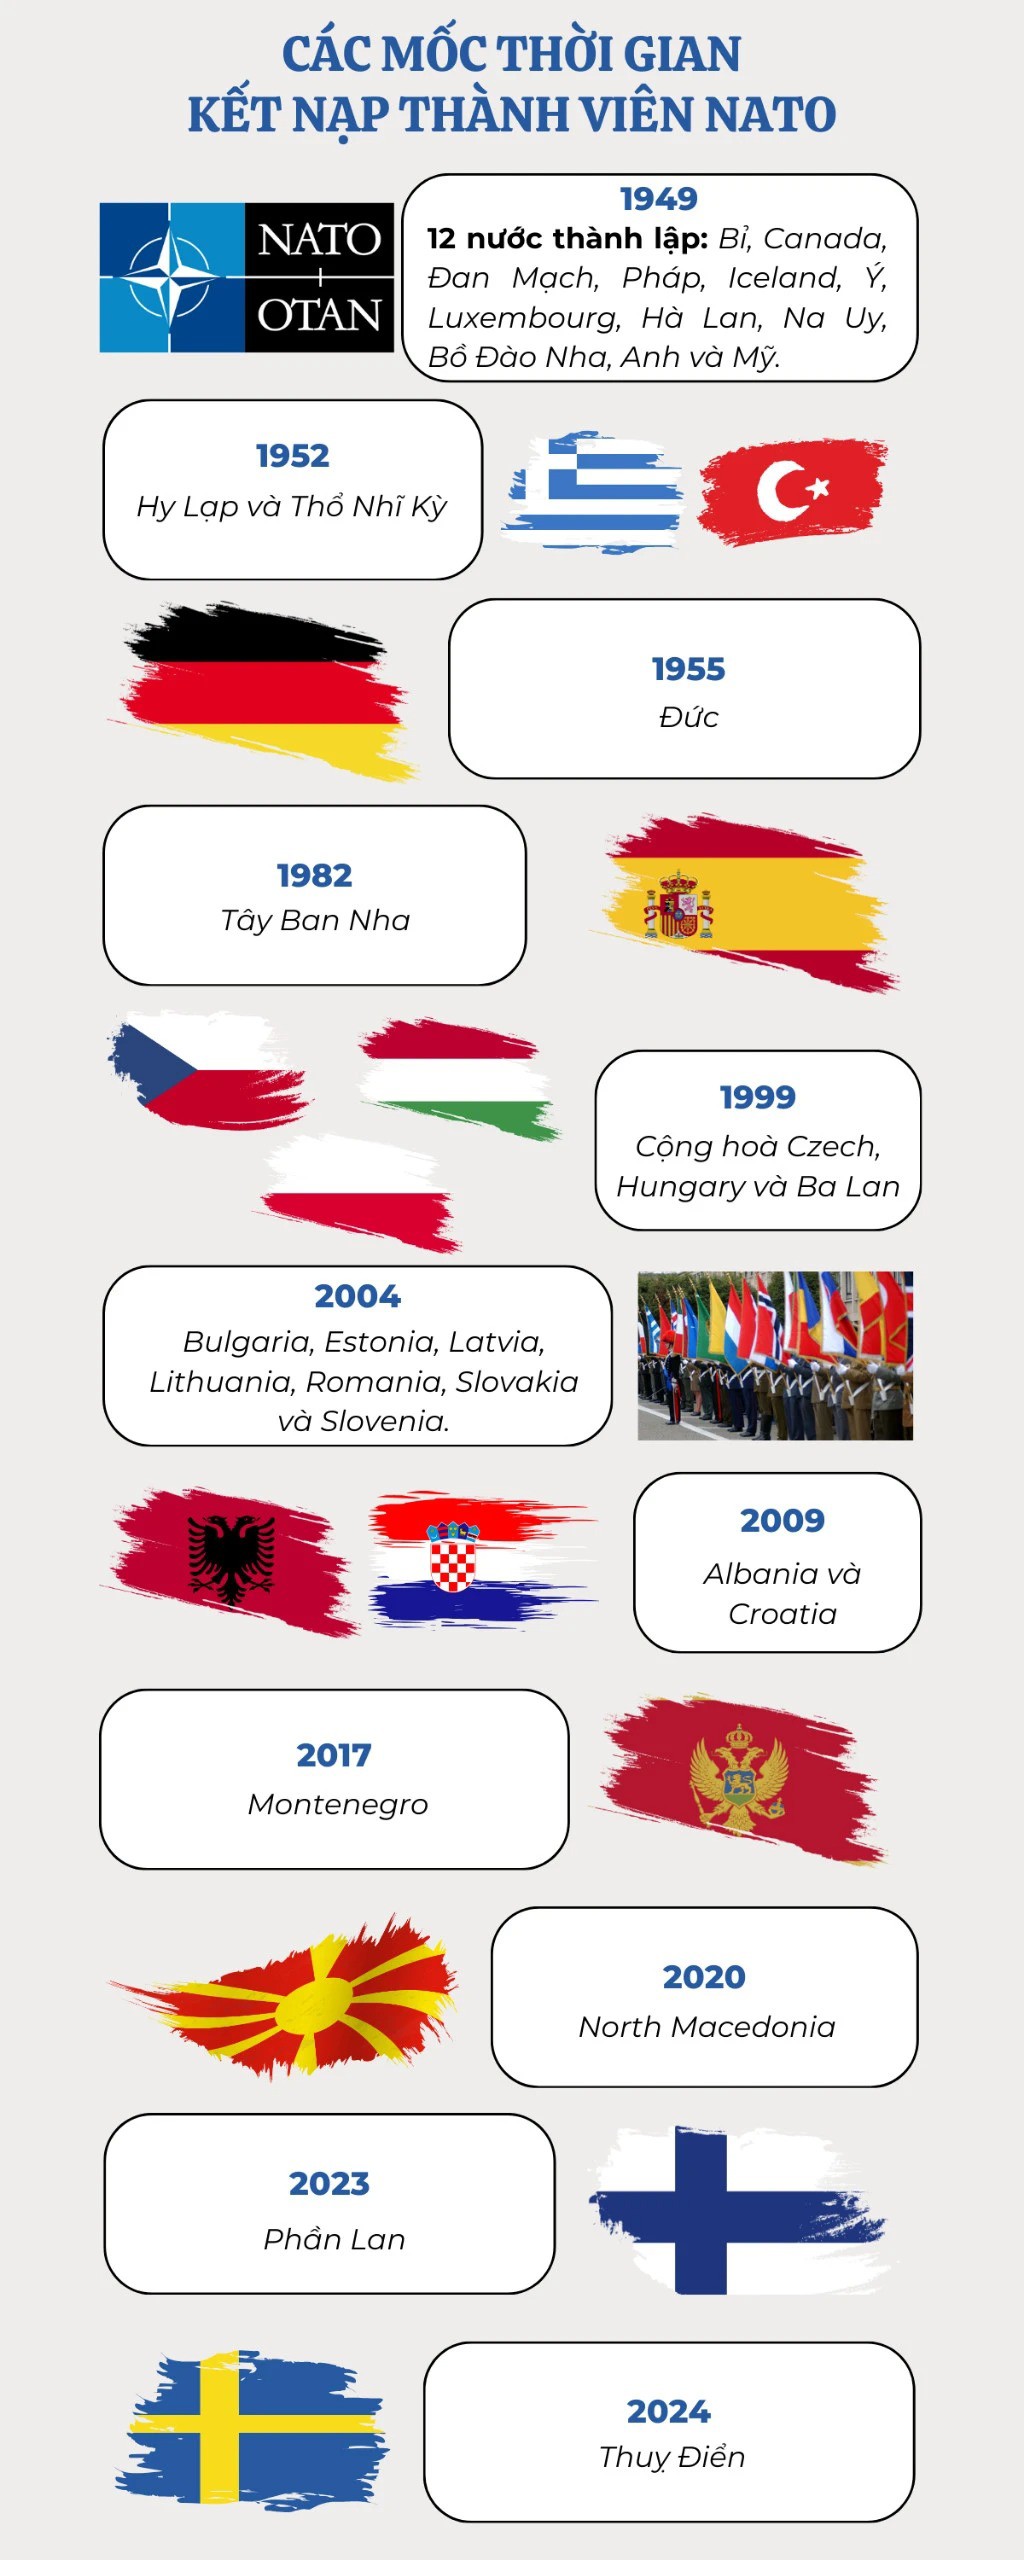 Infographic: Các mốc thời gian kết nạp thành viên NATO - 1